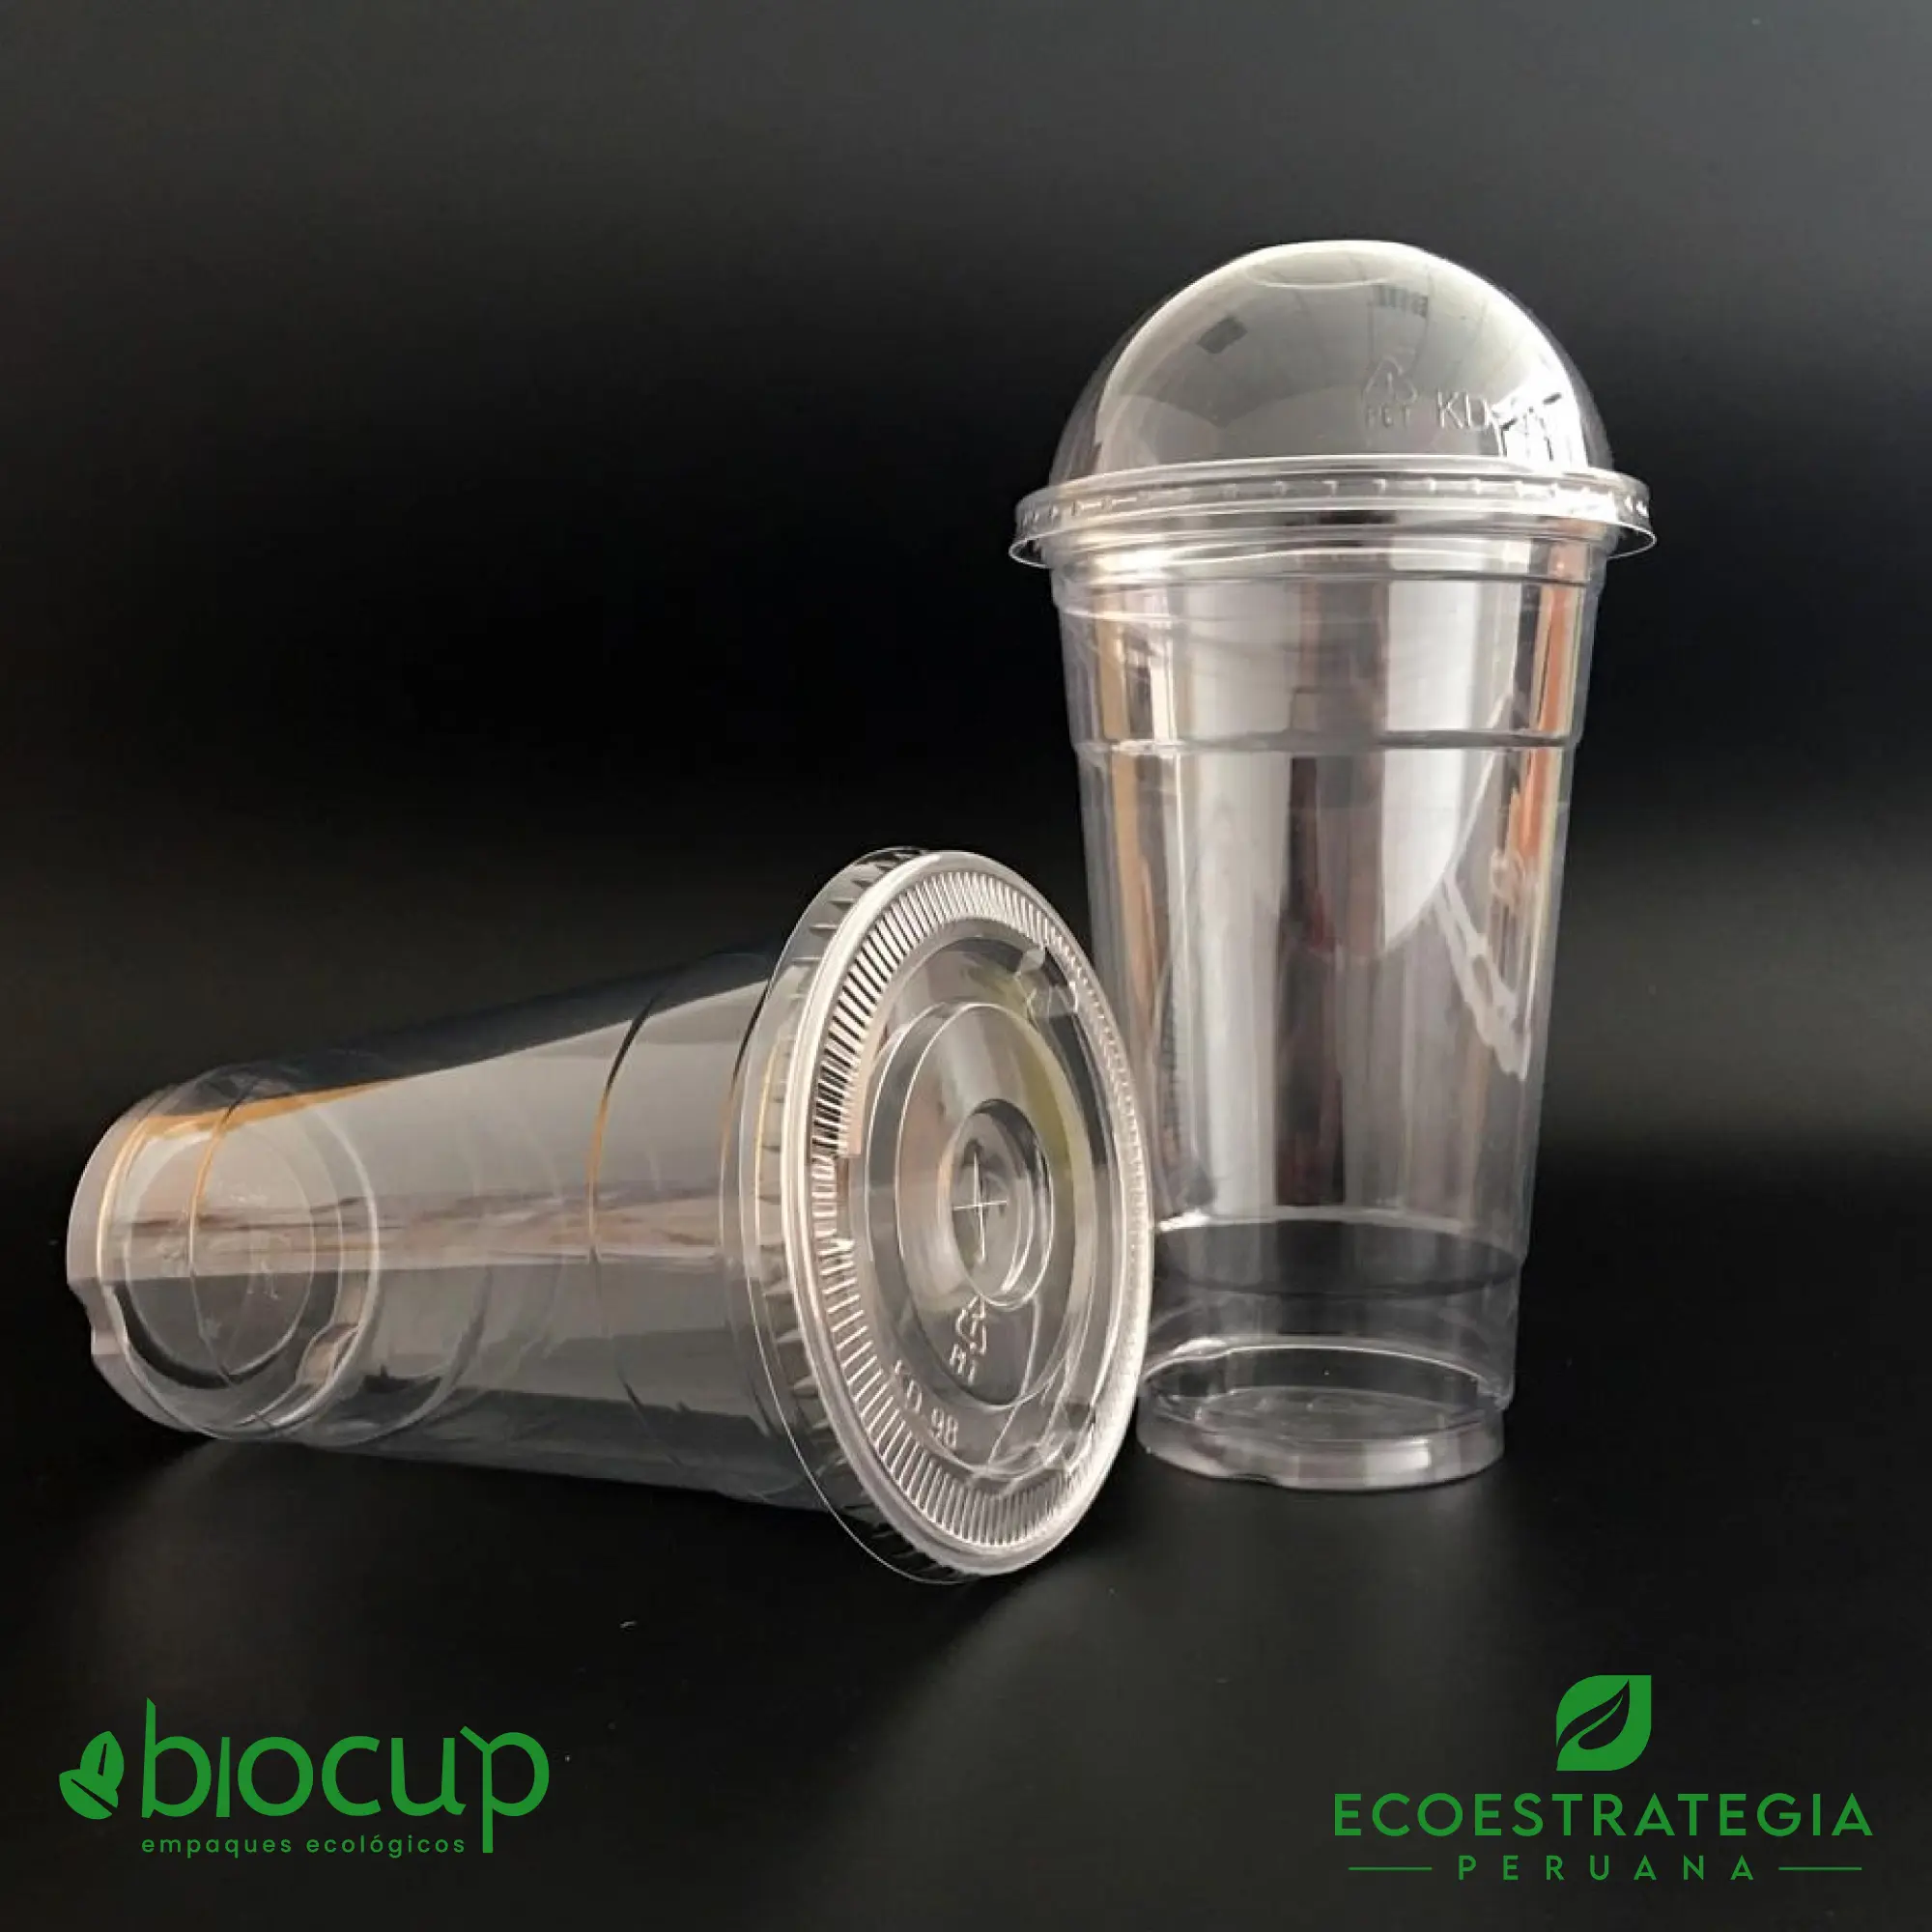 Este vaso de 16 oz con tapa domo, es un producto de materiales descartables, hecho a base de plastico virgén. Cotiza tus vasos para bebidas frías o calientes